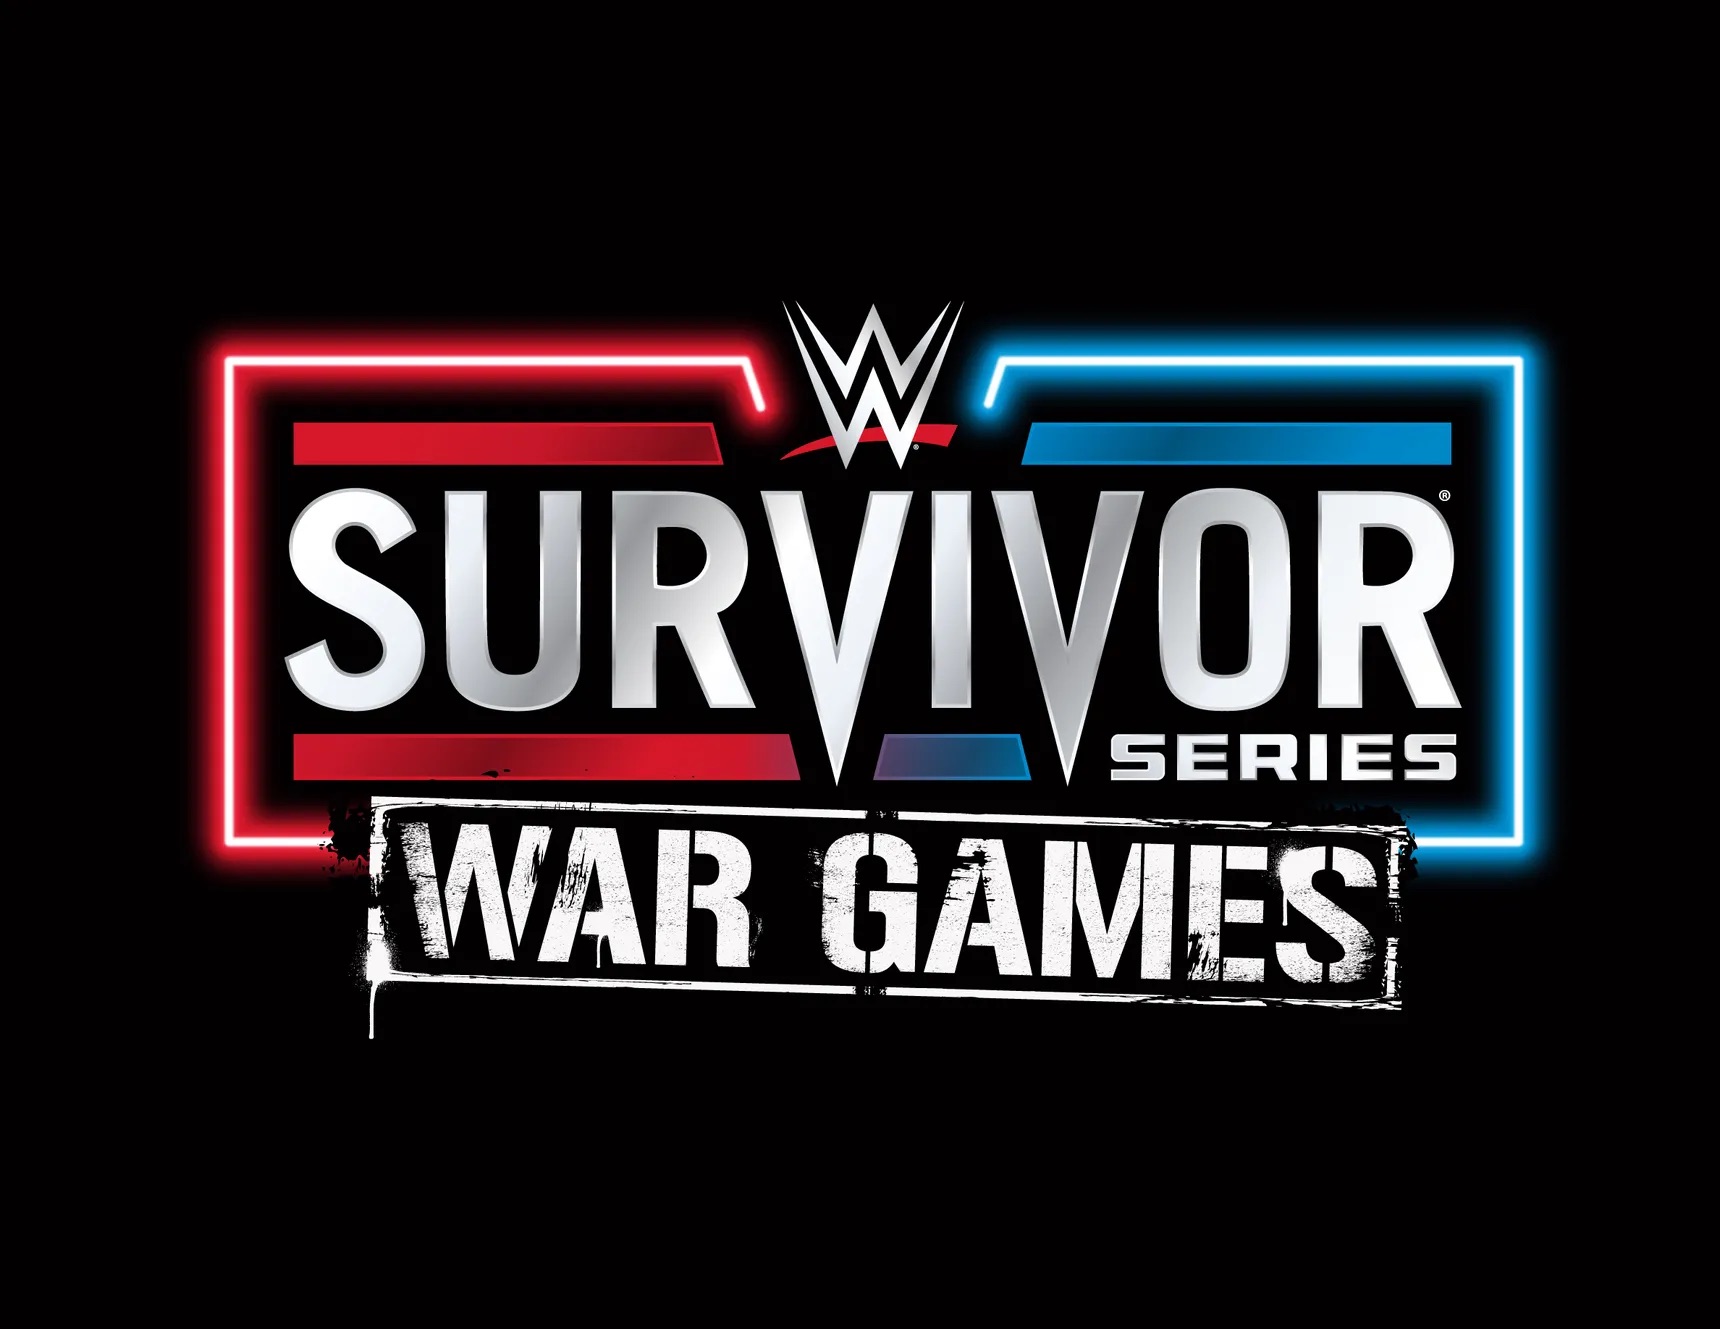 WWE Survivor Series is now 'Survivor Series: WarGames'